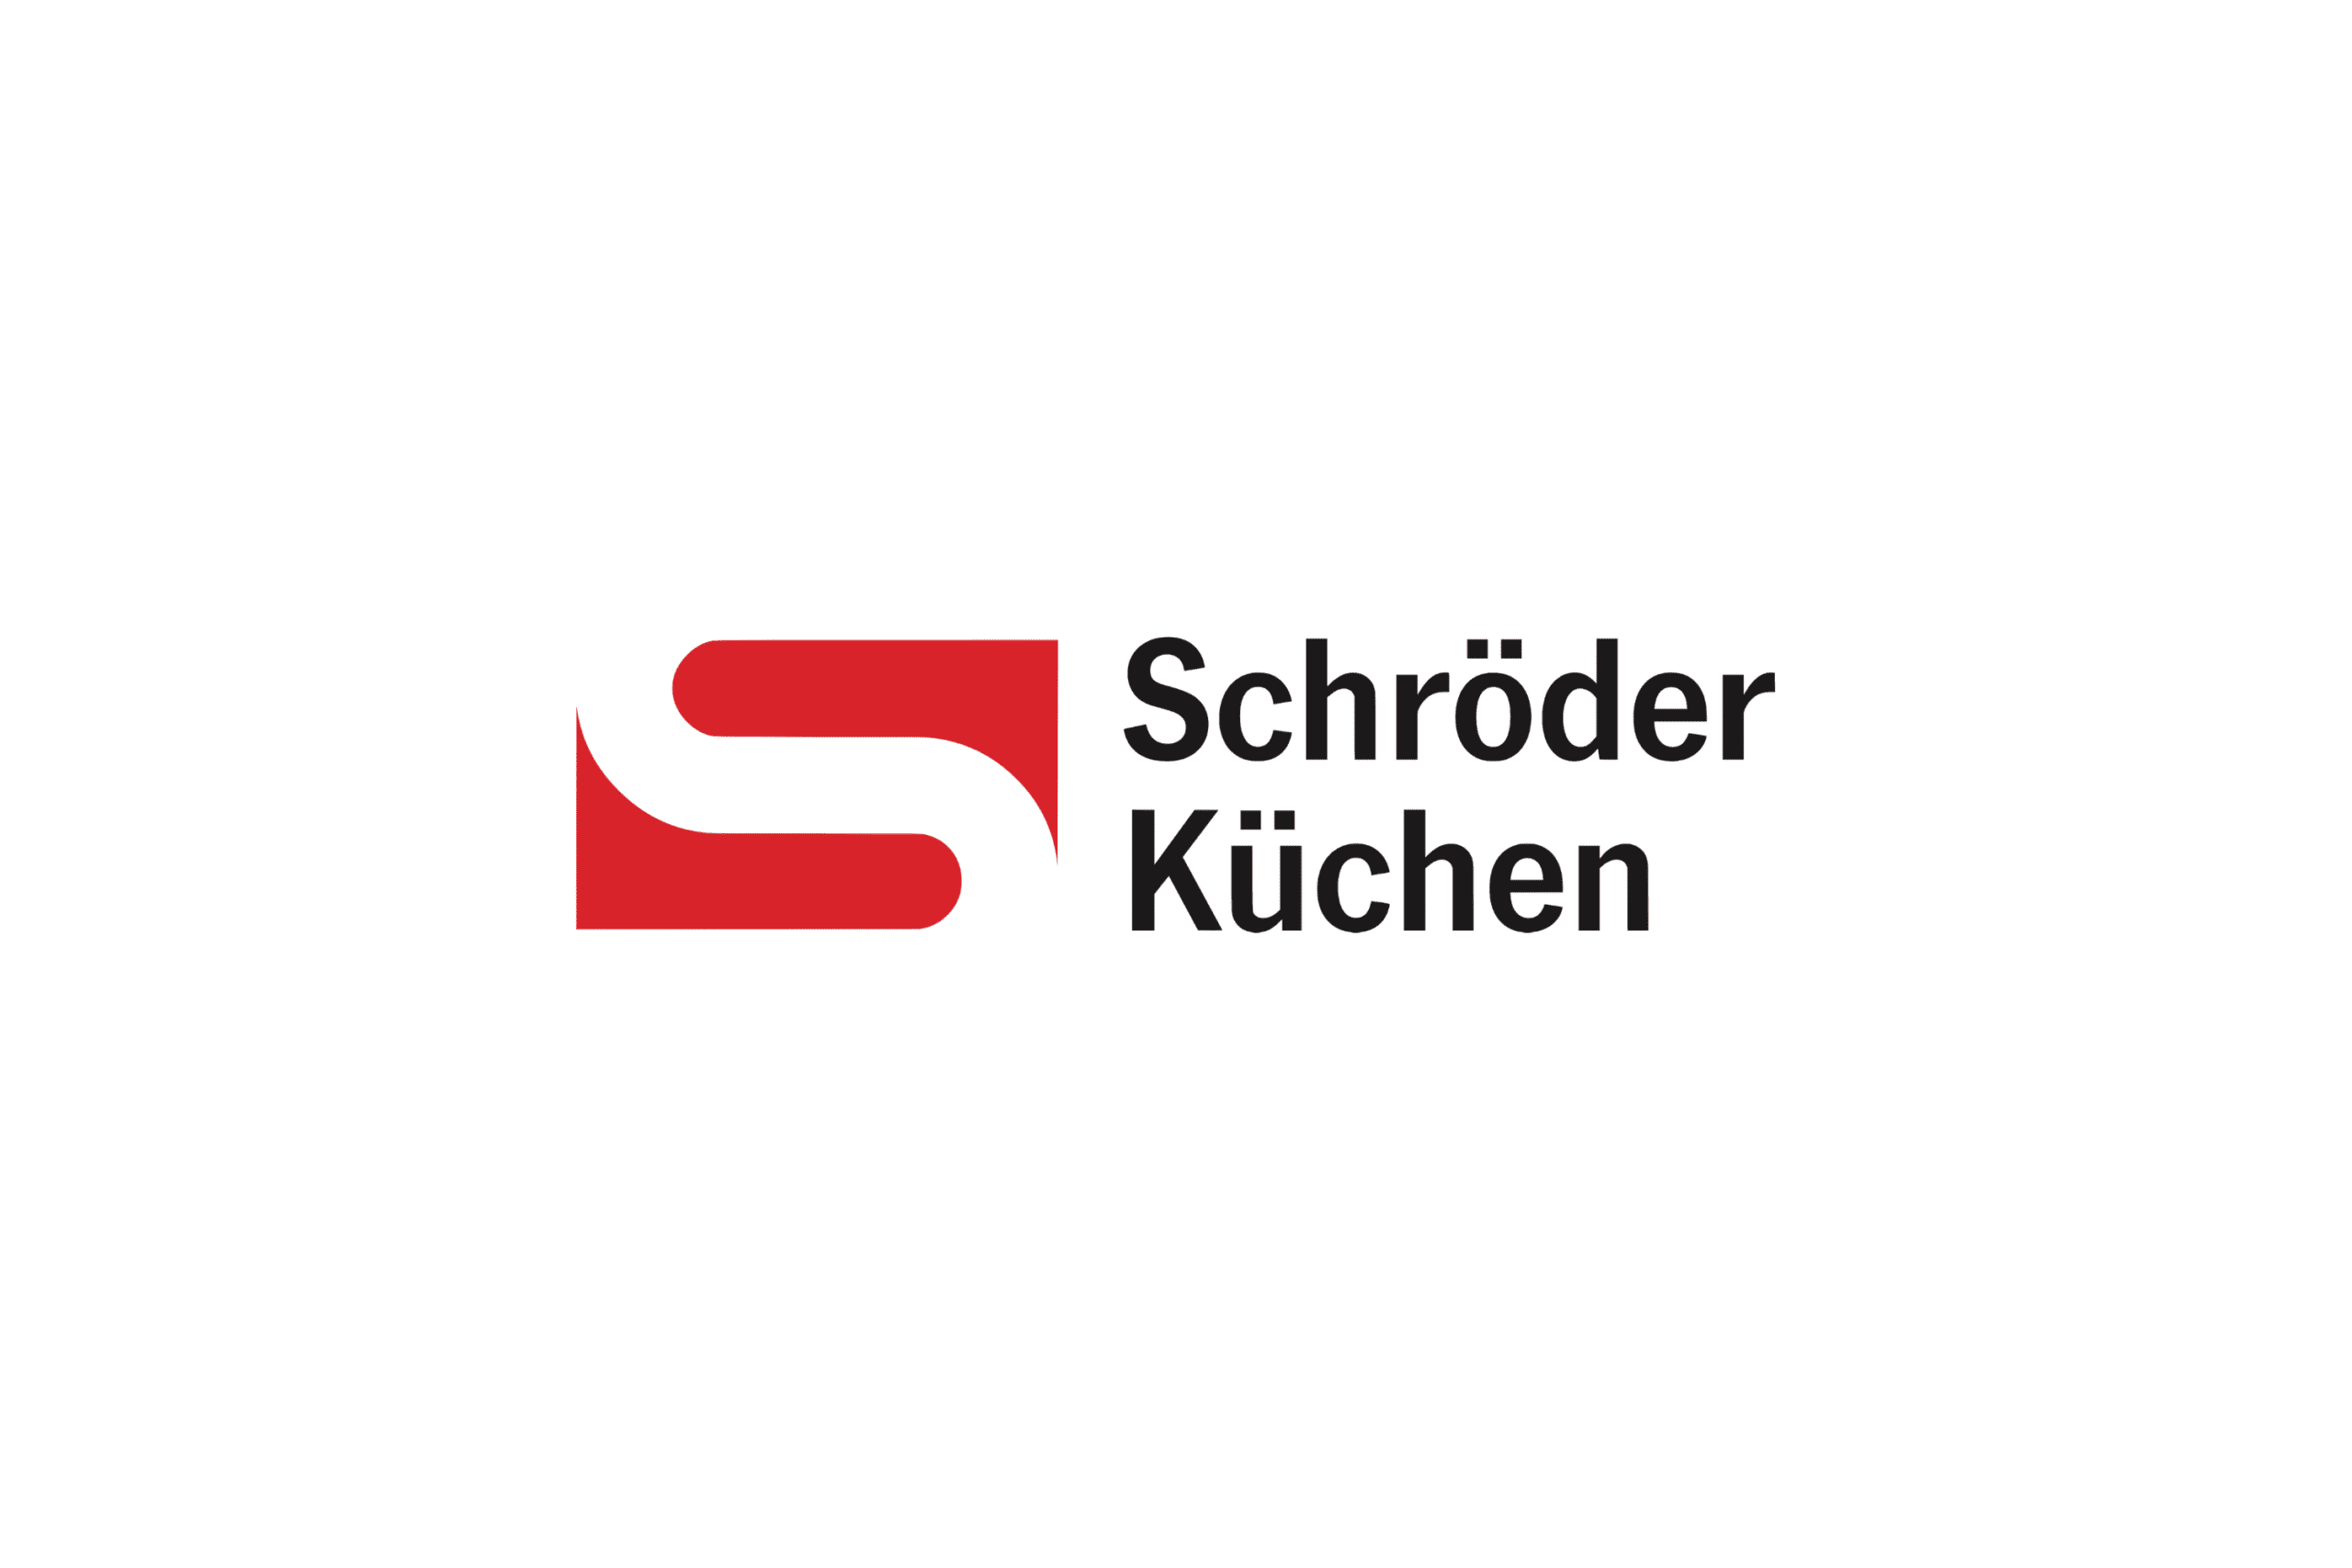 Schröder logo